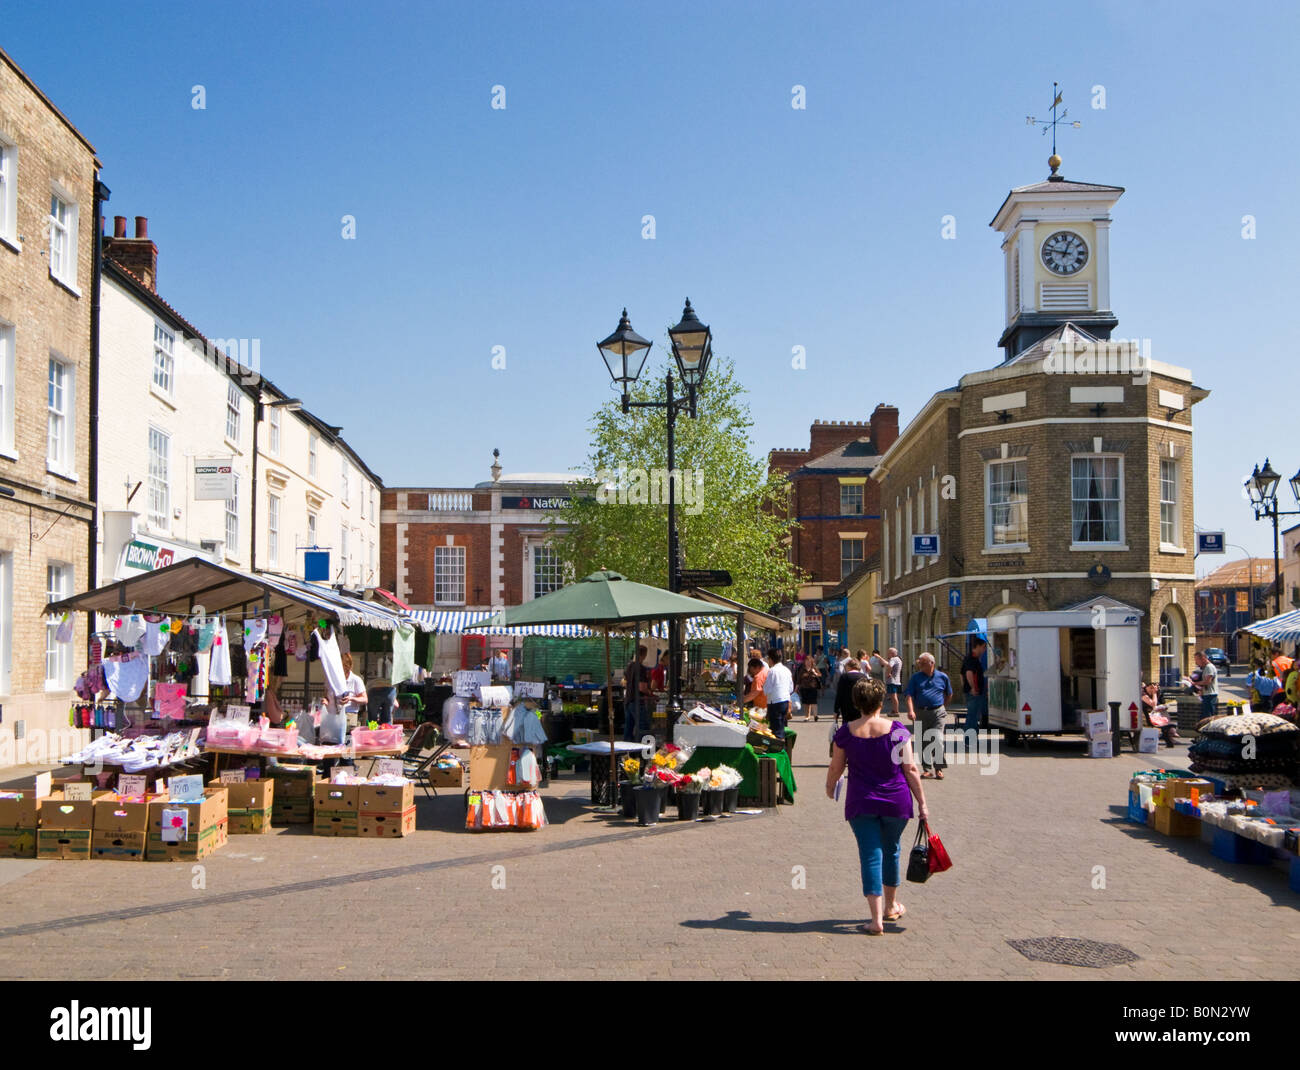 La torre del reloj y puestos de mercado en el centro de la ciudad en Brigg, Norte de Lincolnshire, Reino Unido Foto de stock